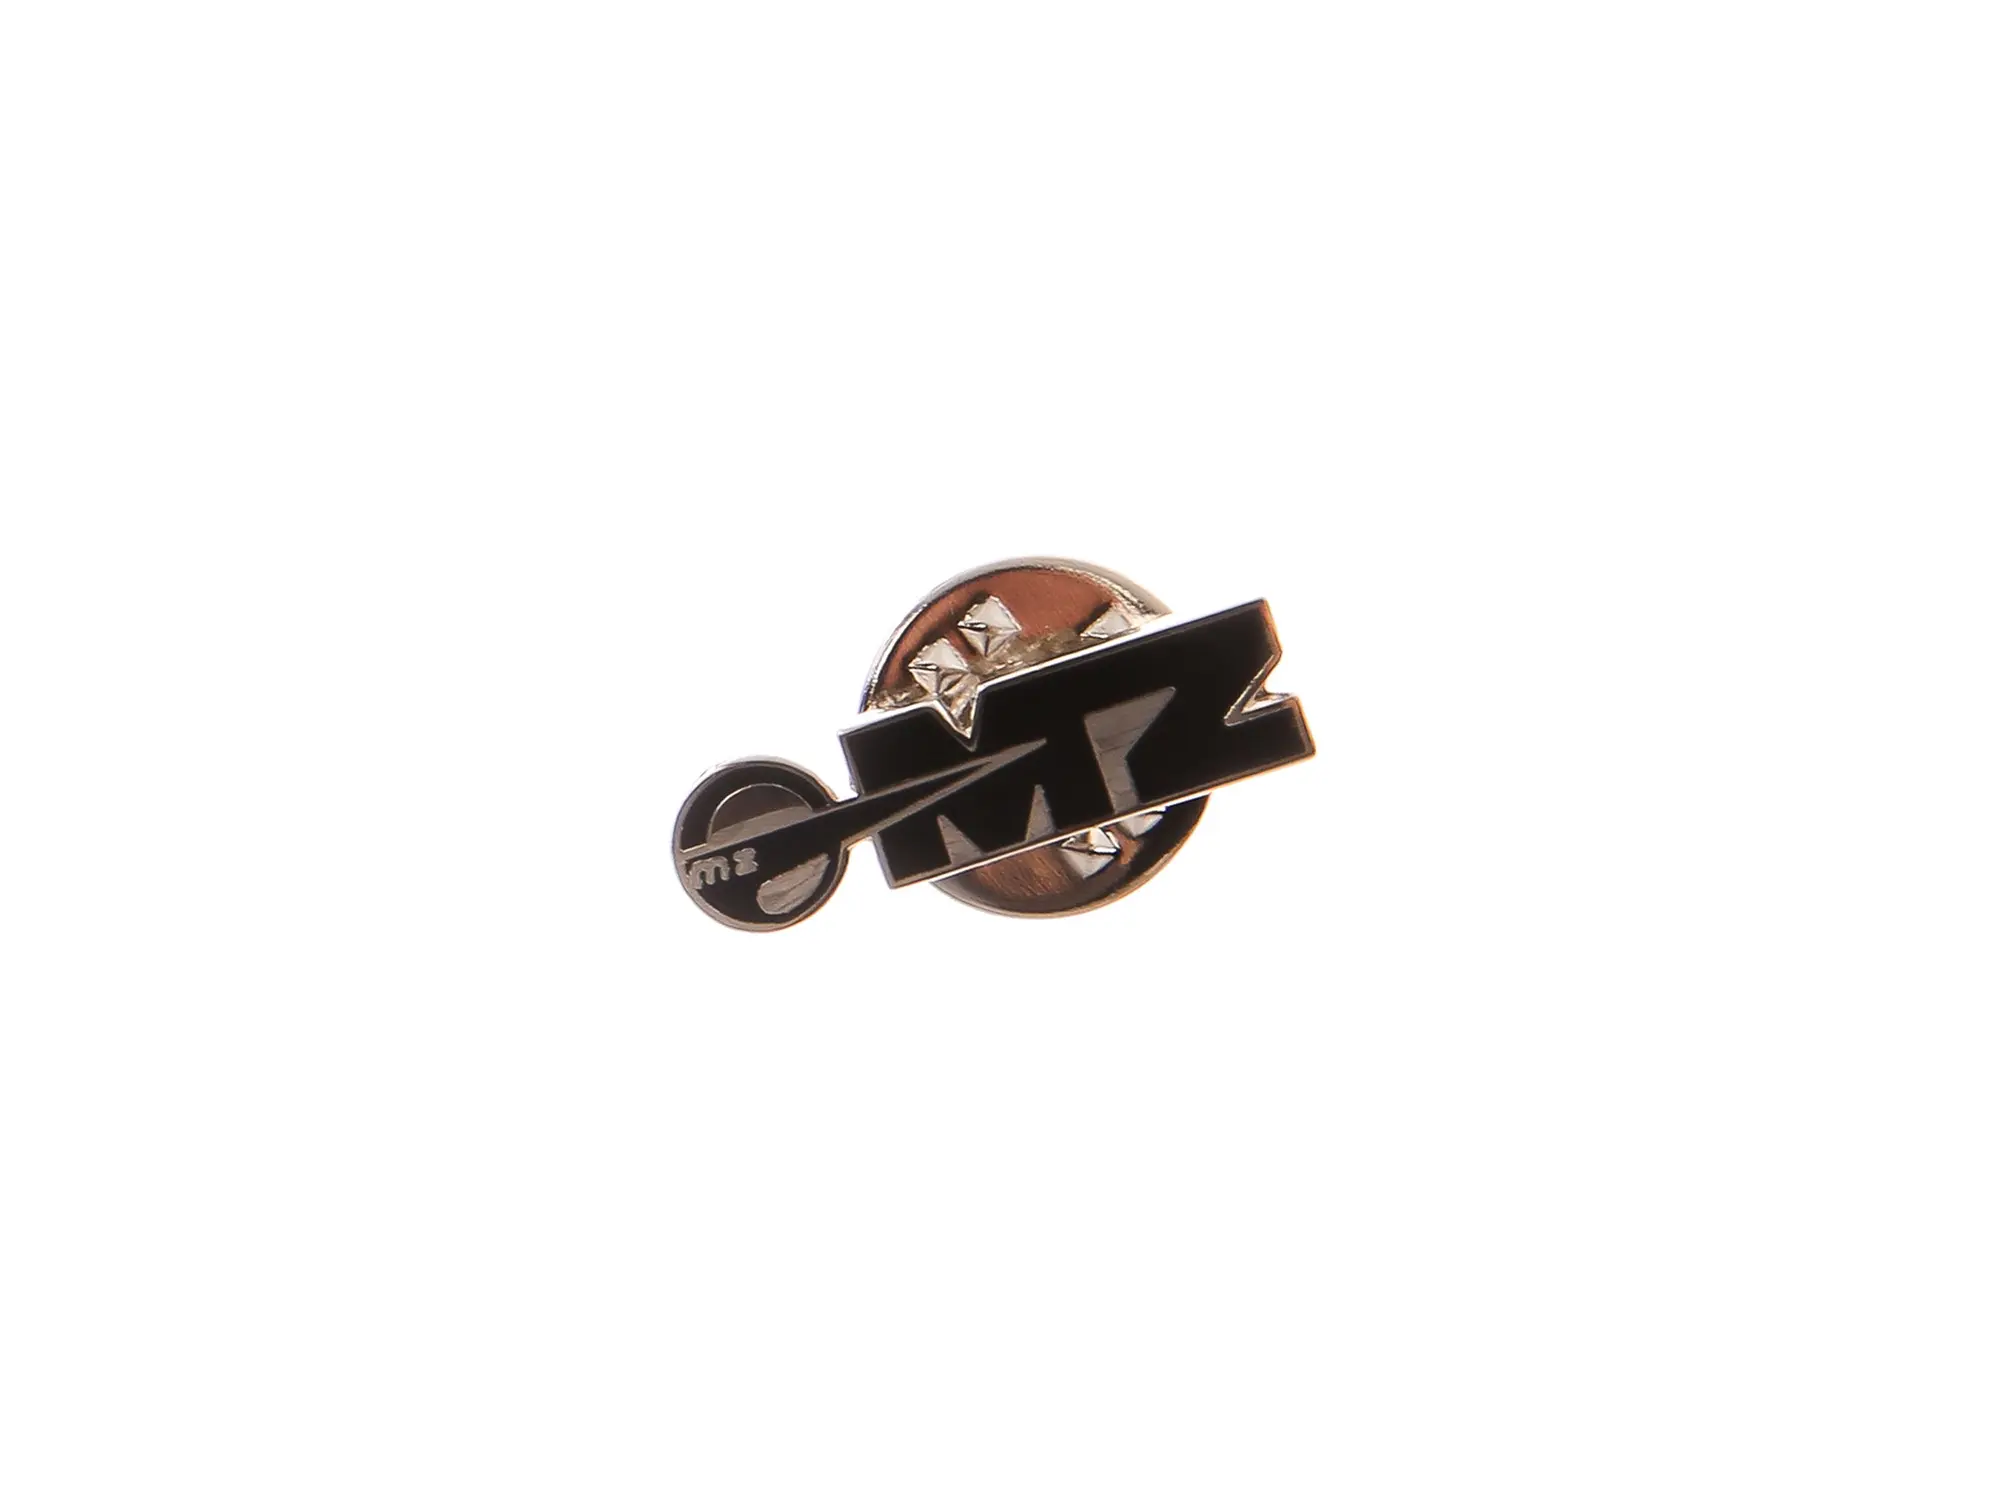 Ansteck-Pin MZ Logo in Schwarz/Silber, Art.-Nr.: 10066874 - Bild 1